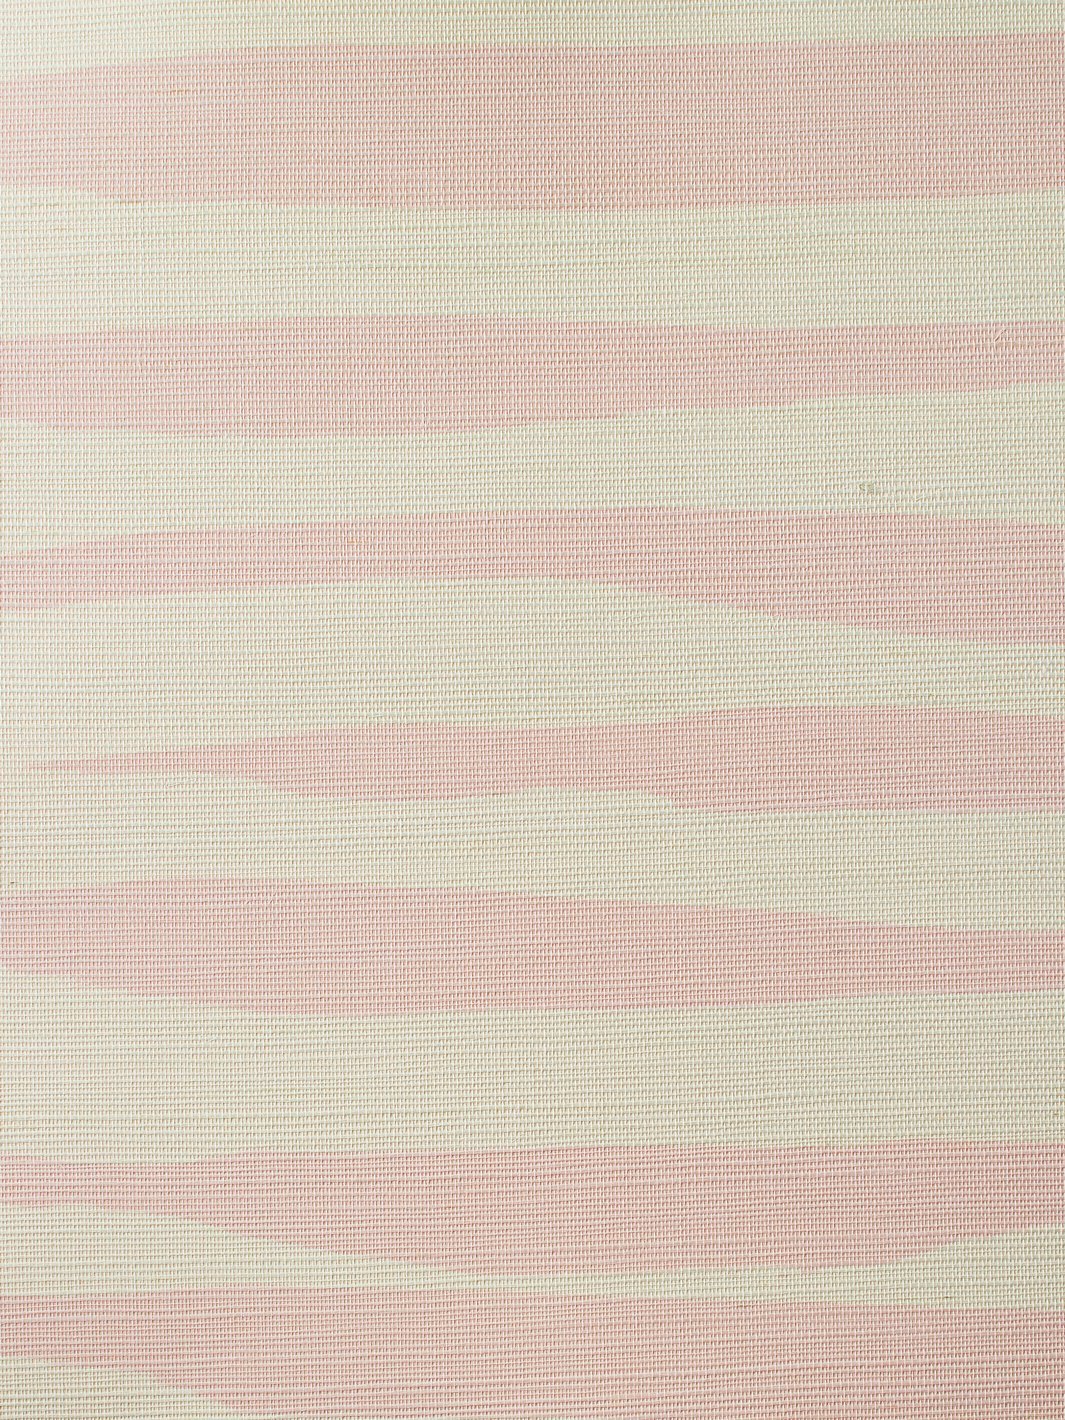 'Watercolor Weave Large' Grasscloth' Wallpaper by Wallshoppe - Ballet Slipper